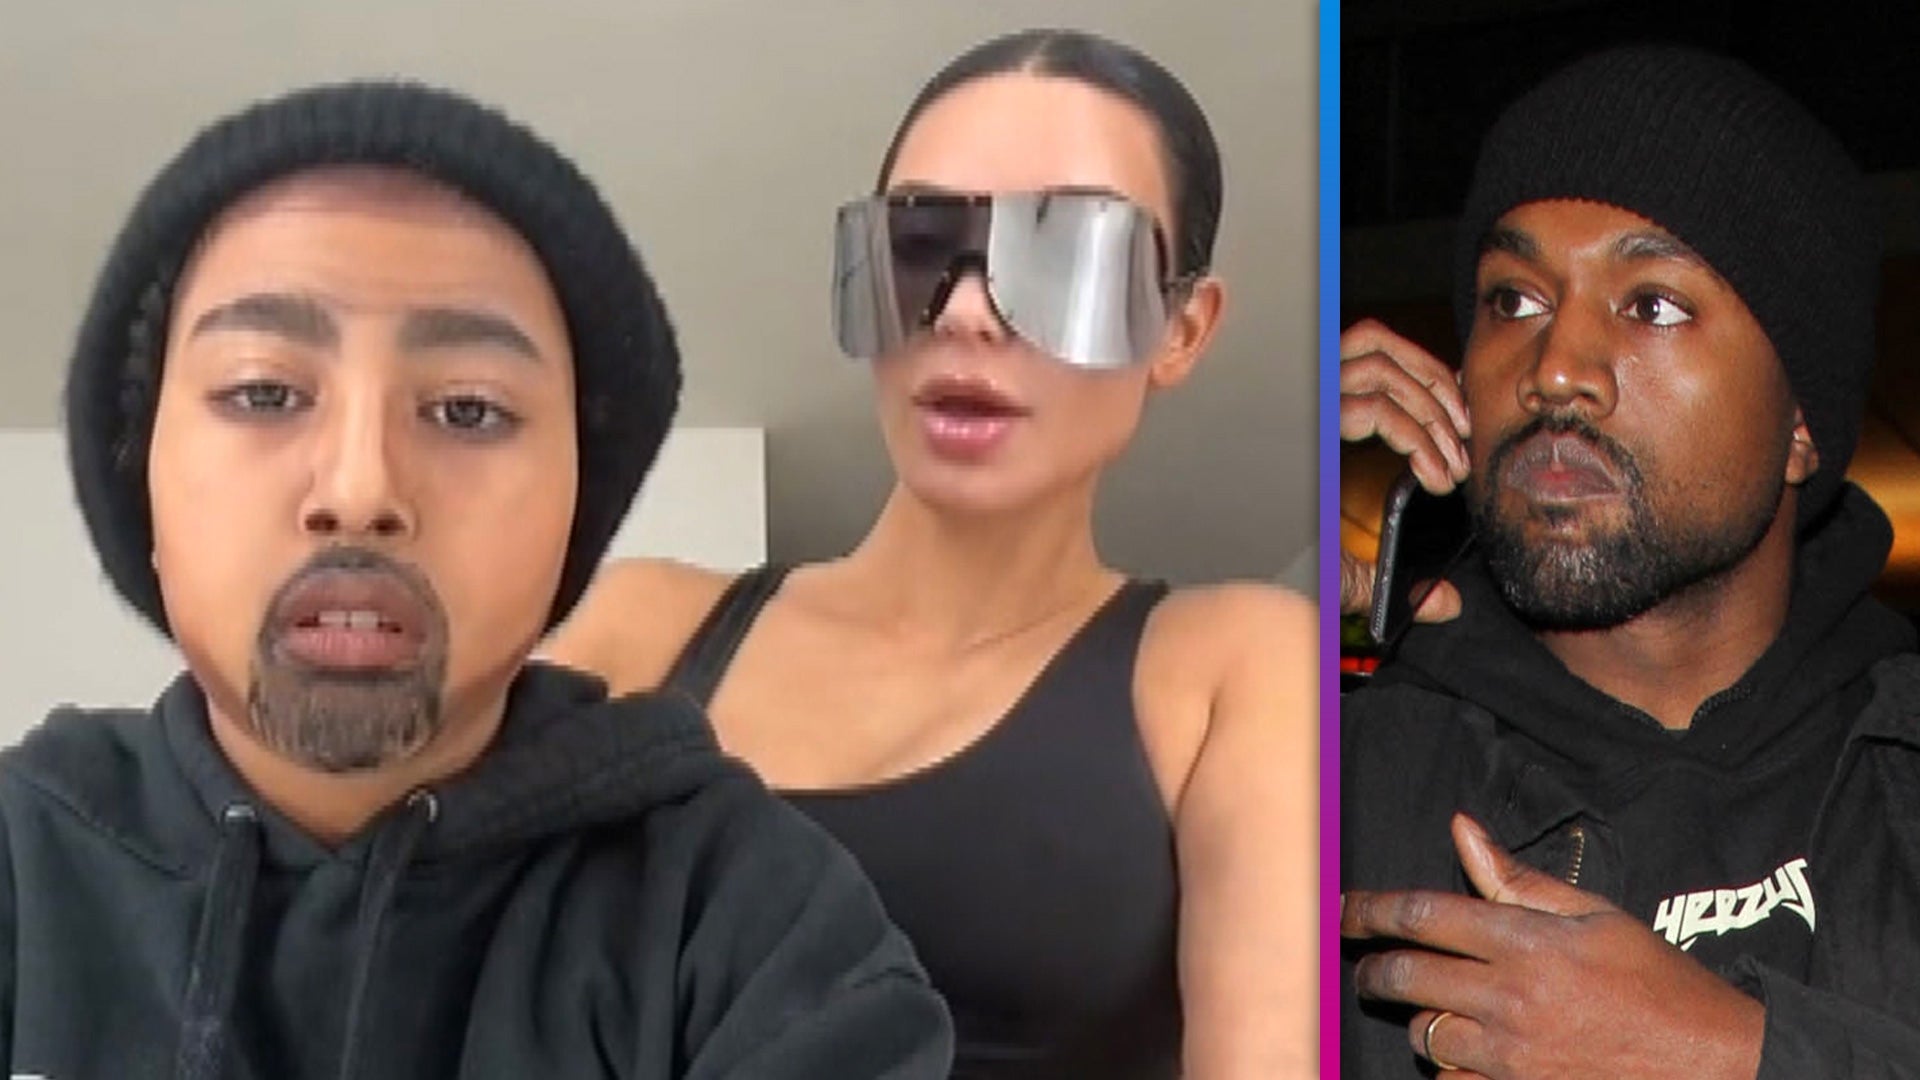 North Transforms Into Dad Kanye West Alongside Kim Kardashian in New TikTok Clip  